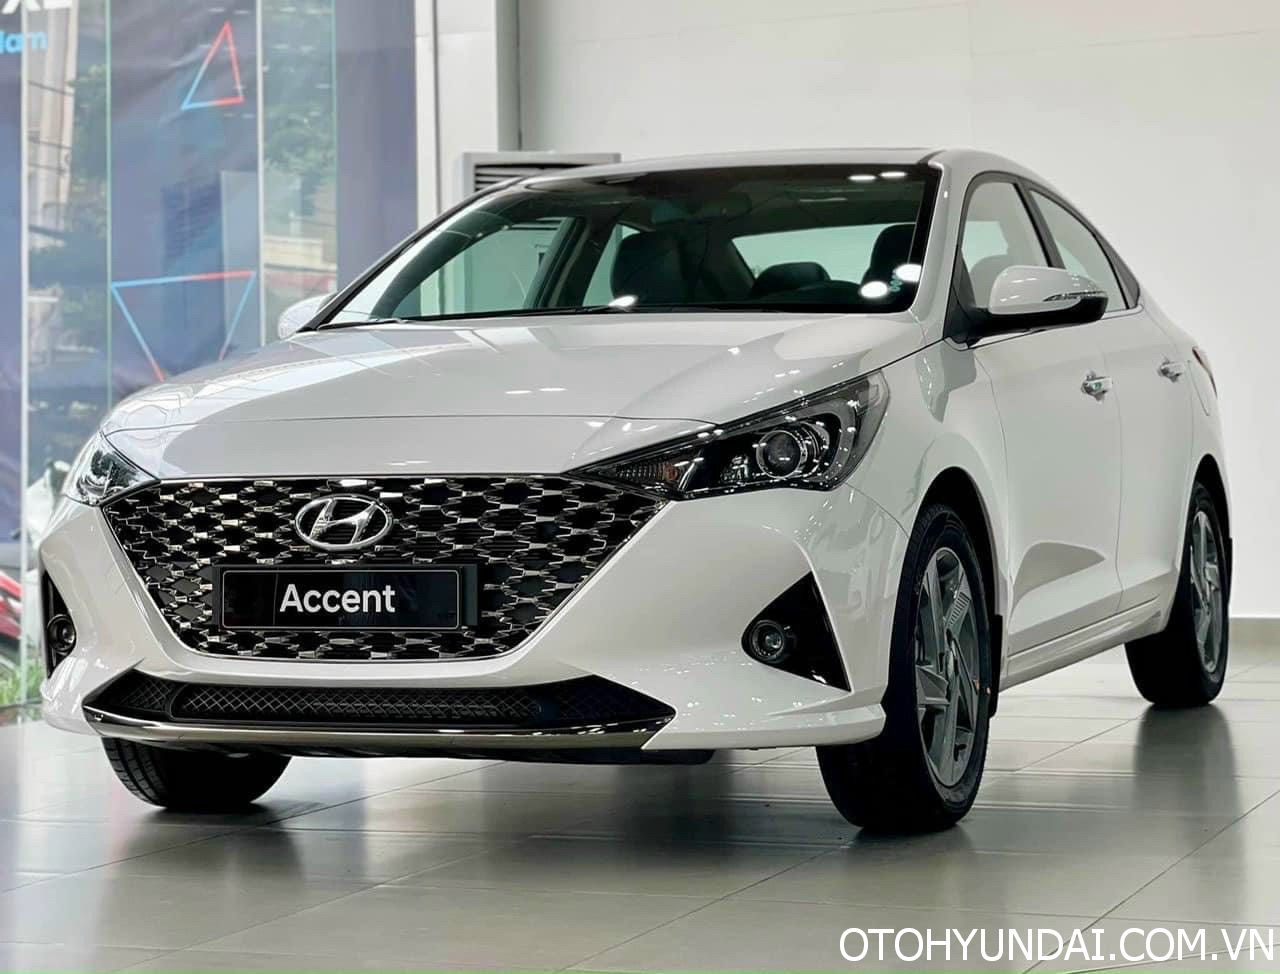 Hướng Dẫn Sử Dụng Xe Hyundai Accent | otohyundai.com.vn 